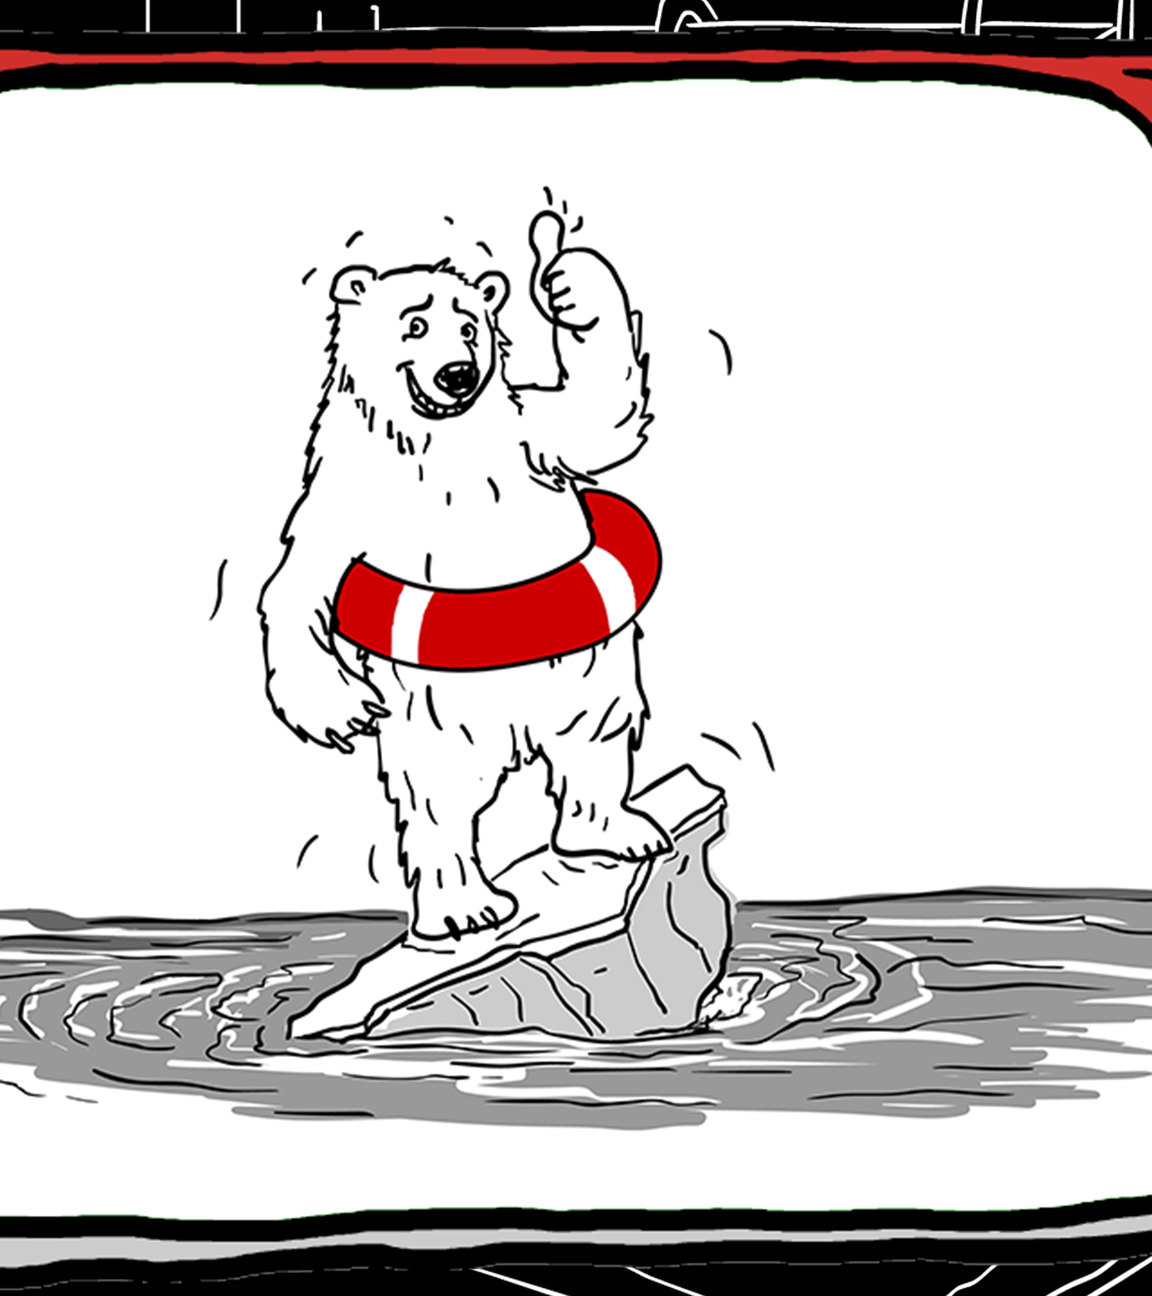 Zeichnung: Fernsehbild mit Eisbären und Rettungsring auf einem Stück Eisscholle